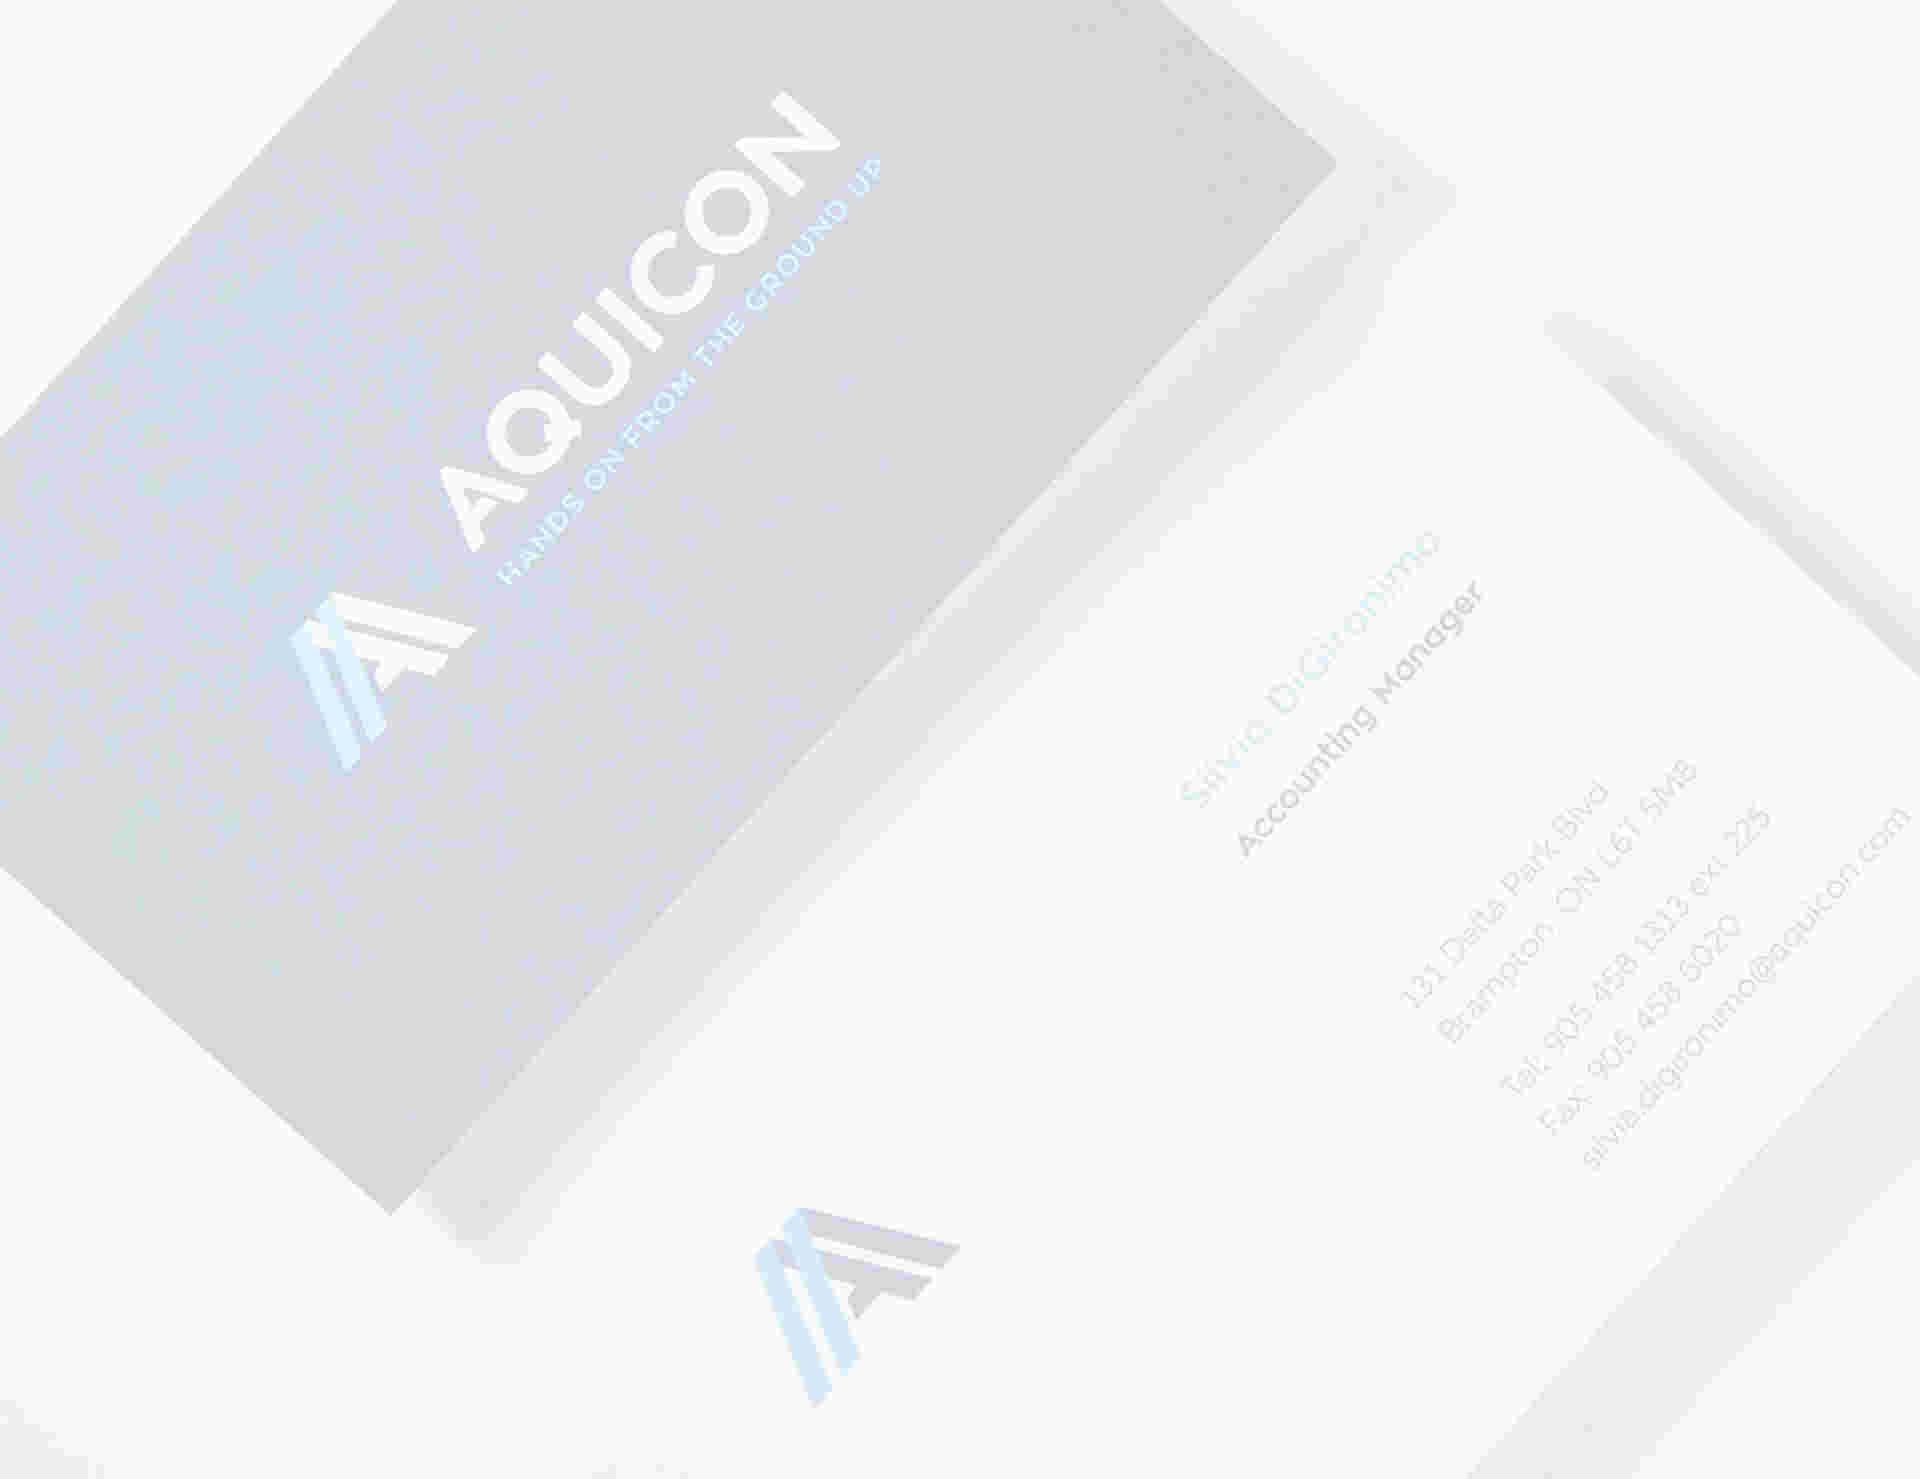 Aquicon - Aquicon_client_6col-NEW-BC